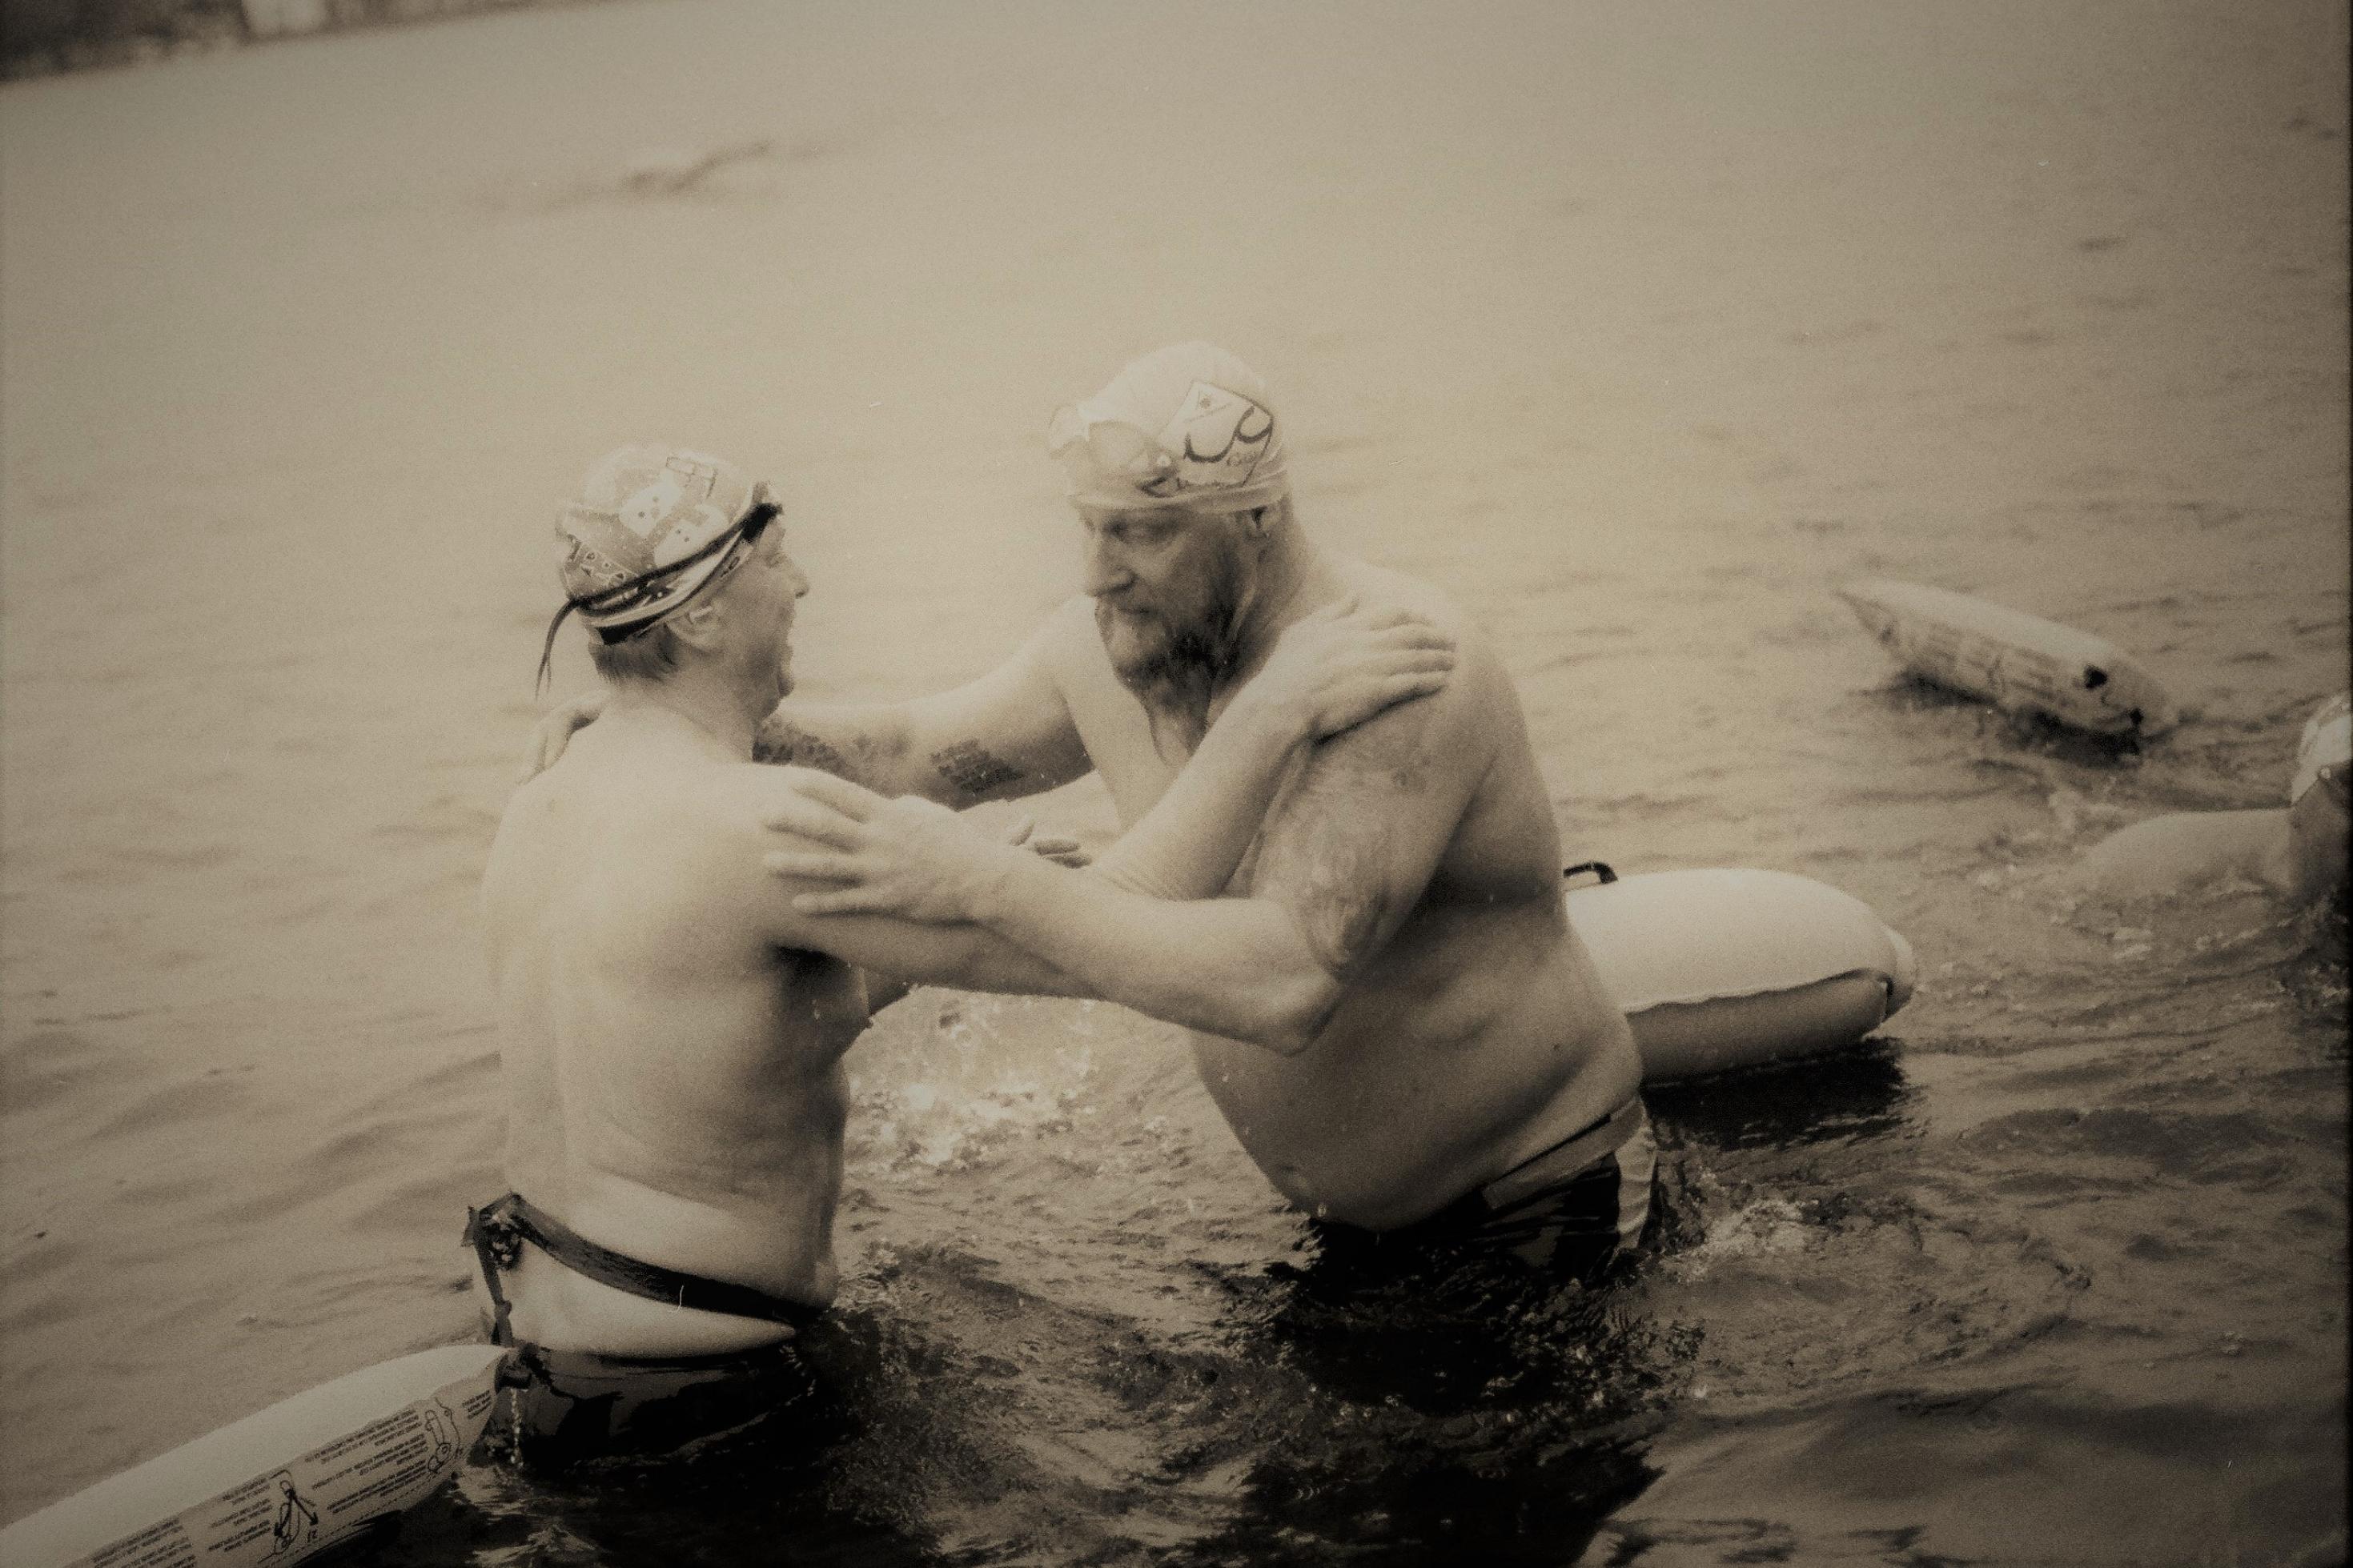 Zwei Männer nur in Badehose im eiskalten Wasser stehend.